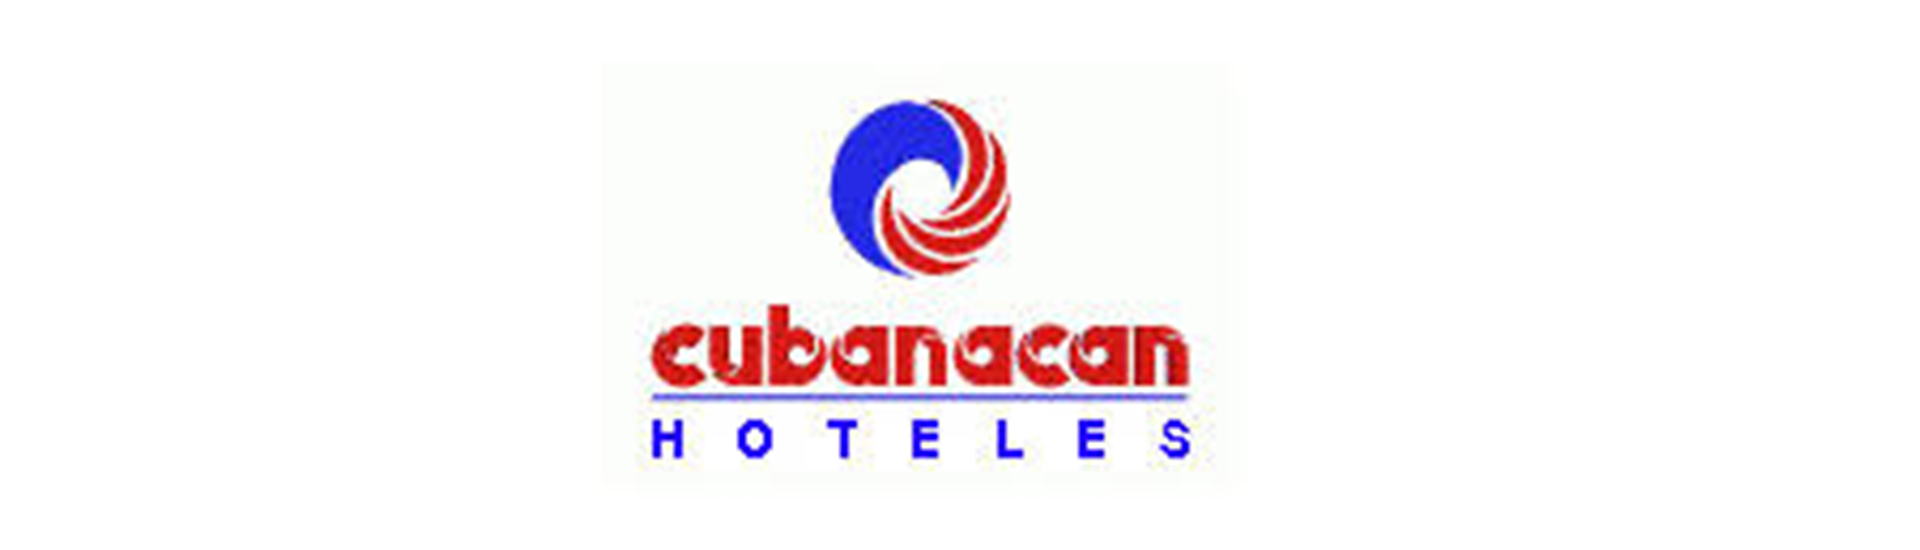 Logotipo Hoteles Cubanacan Cuba